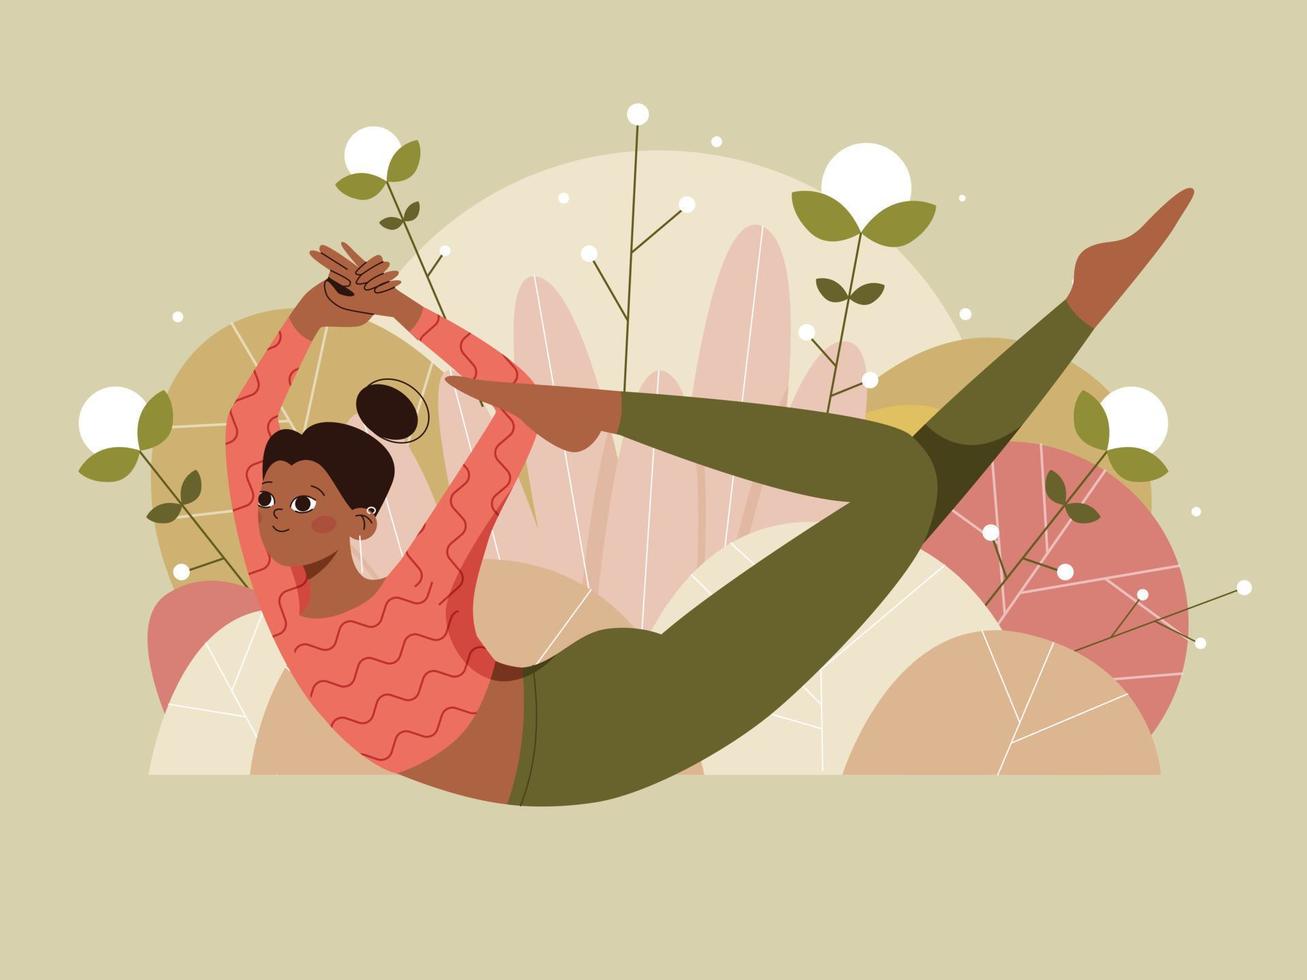 mulher fazendo pose de ioga no fundo da natureza com folhas. ilustração do conceito de ioga, pilates e estilo de vida saudável. ilustração em vetor plana.